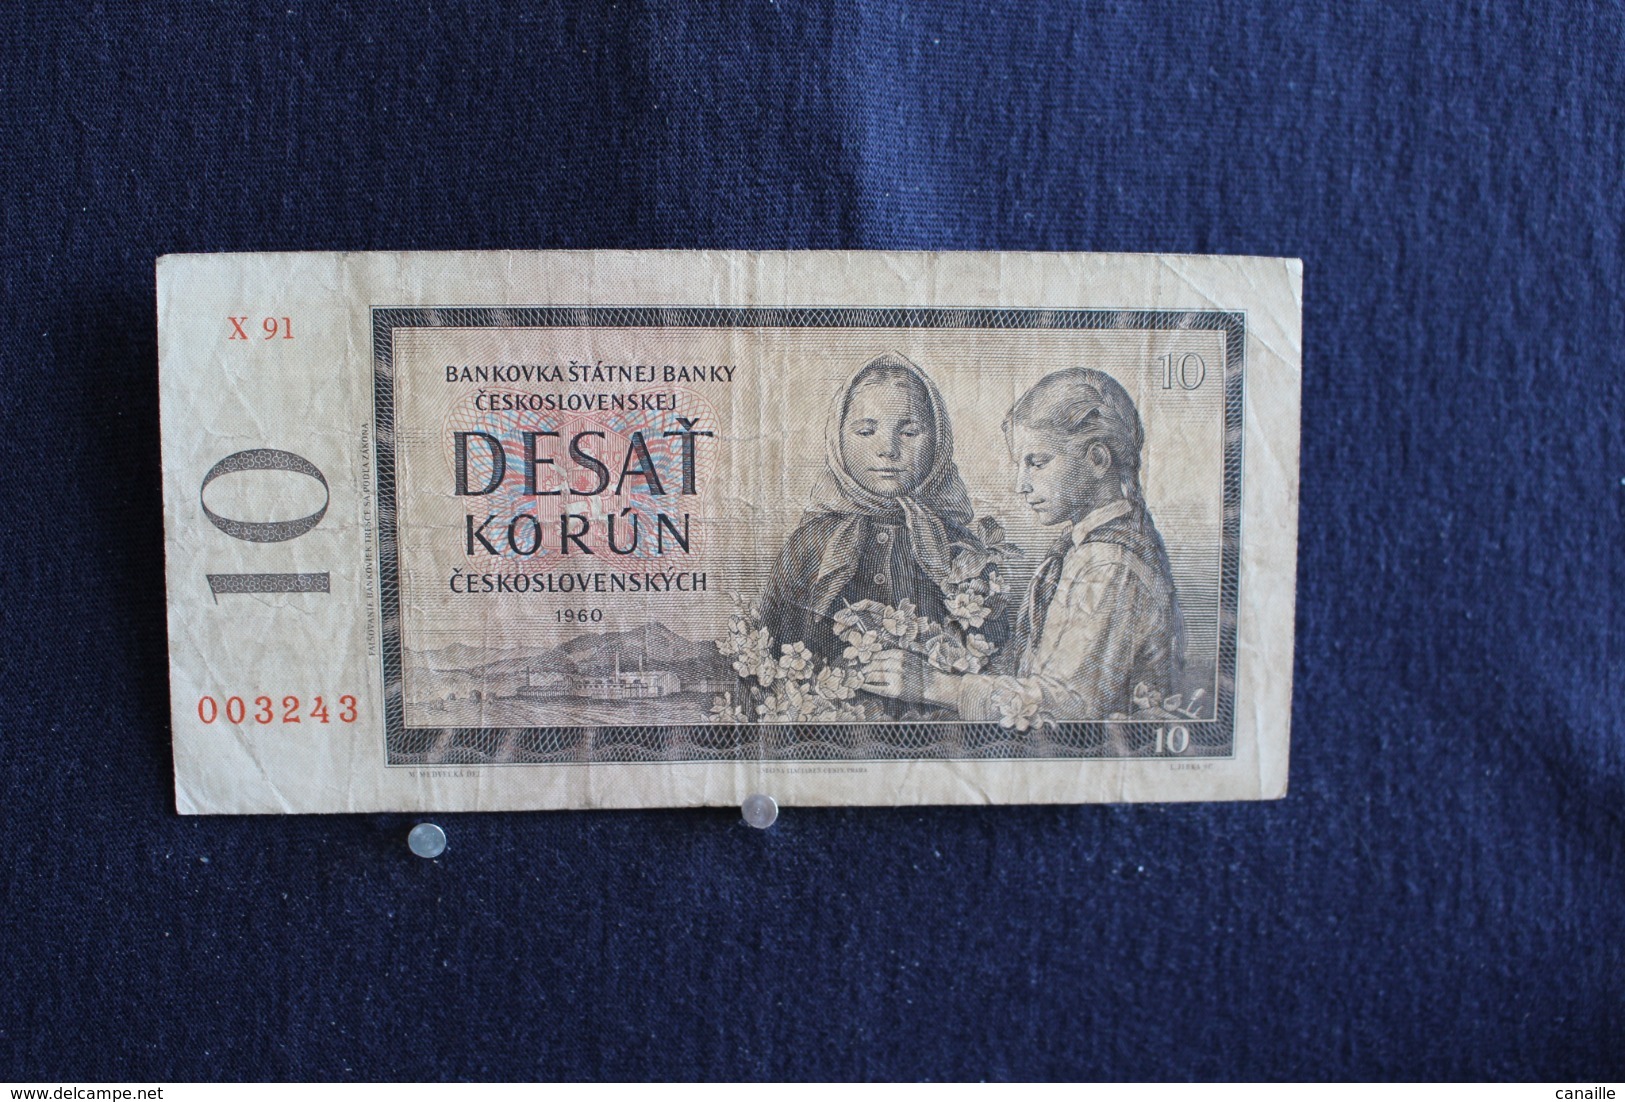 74 /  Tchécoslovaquie -  Kronen 10 Couronnes - Desat Korun   - Ceskoslovenskych  - 1960 - /  N° 003243 - Checoslovaquia